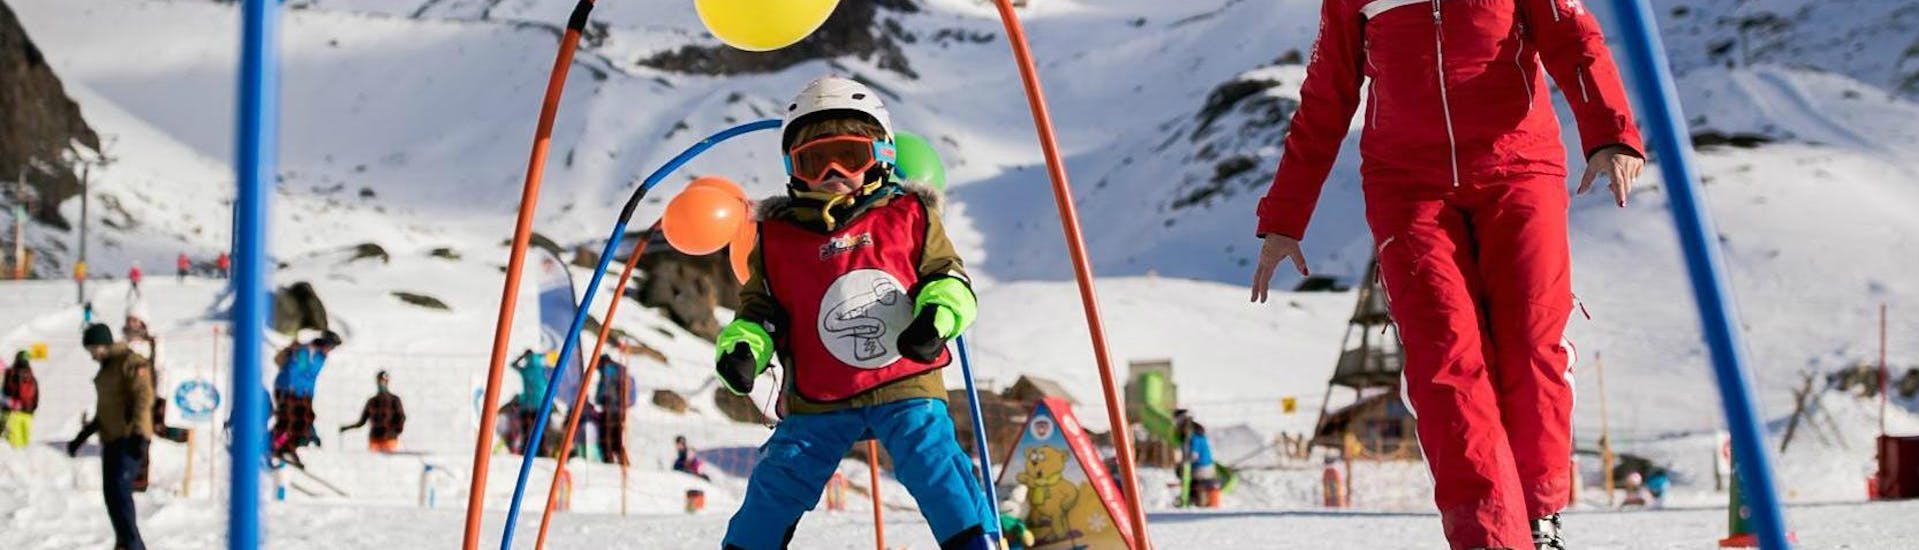 Lezioni di sci per bambini a partire da 3 anni per principianti con Swiss Ski School Saas-Grund.